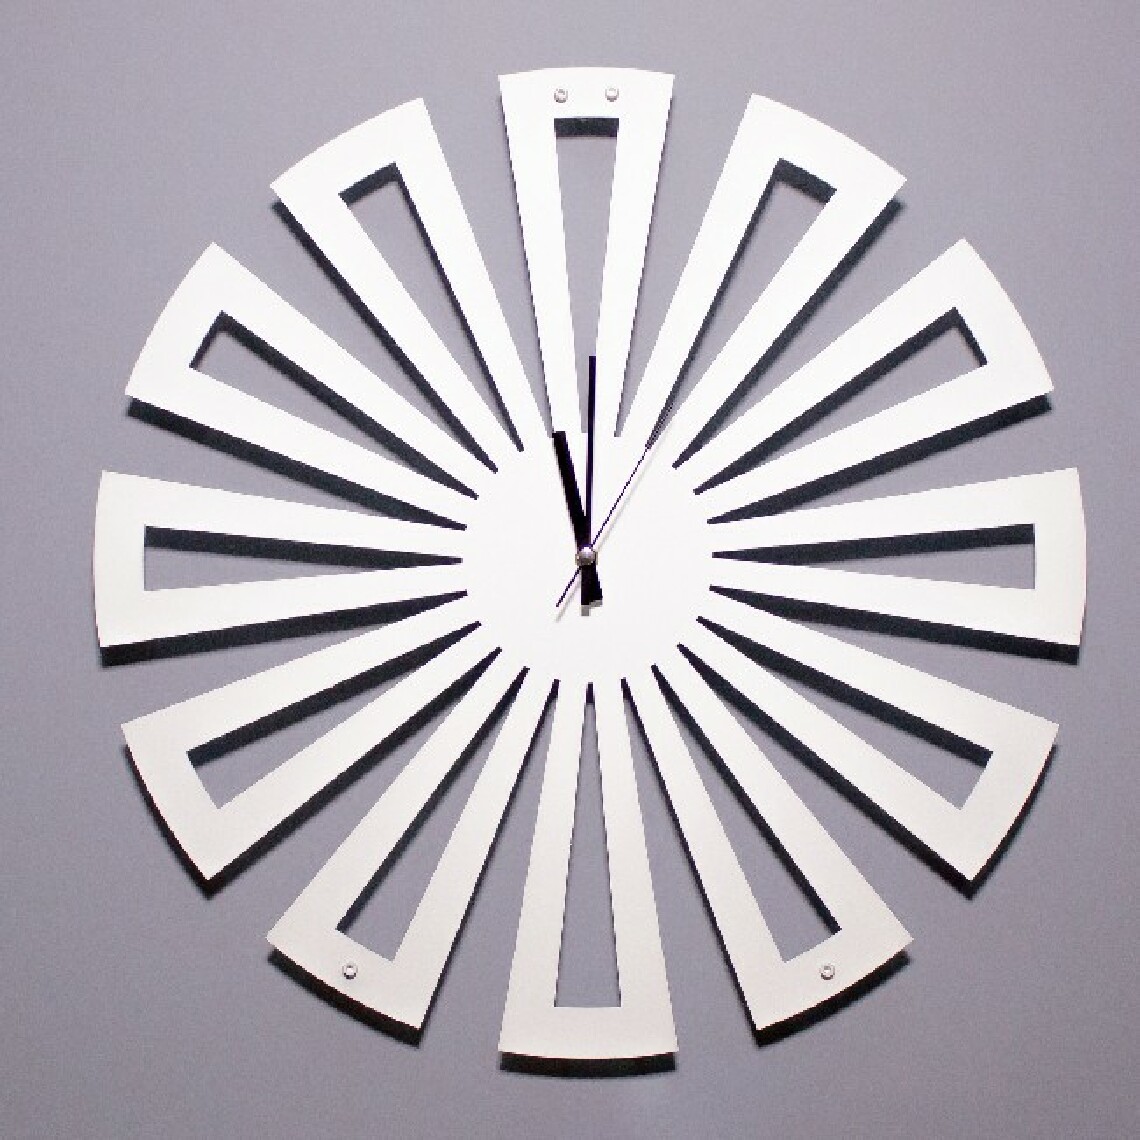 Homemania - HOMEMANIA Horloge De Wall - Rangement, Livres - Mur, Salon, Chambre - Ensemble 2 Blanc en Métal, 50 x 0,15 x 50 cm - Horloges, pendules